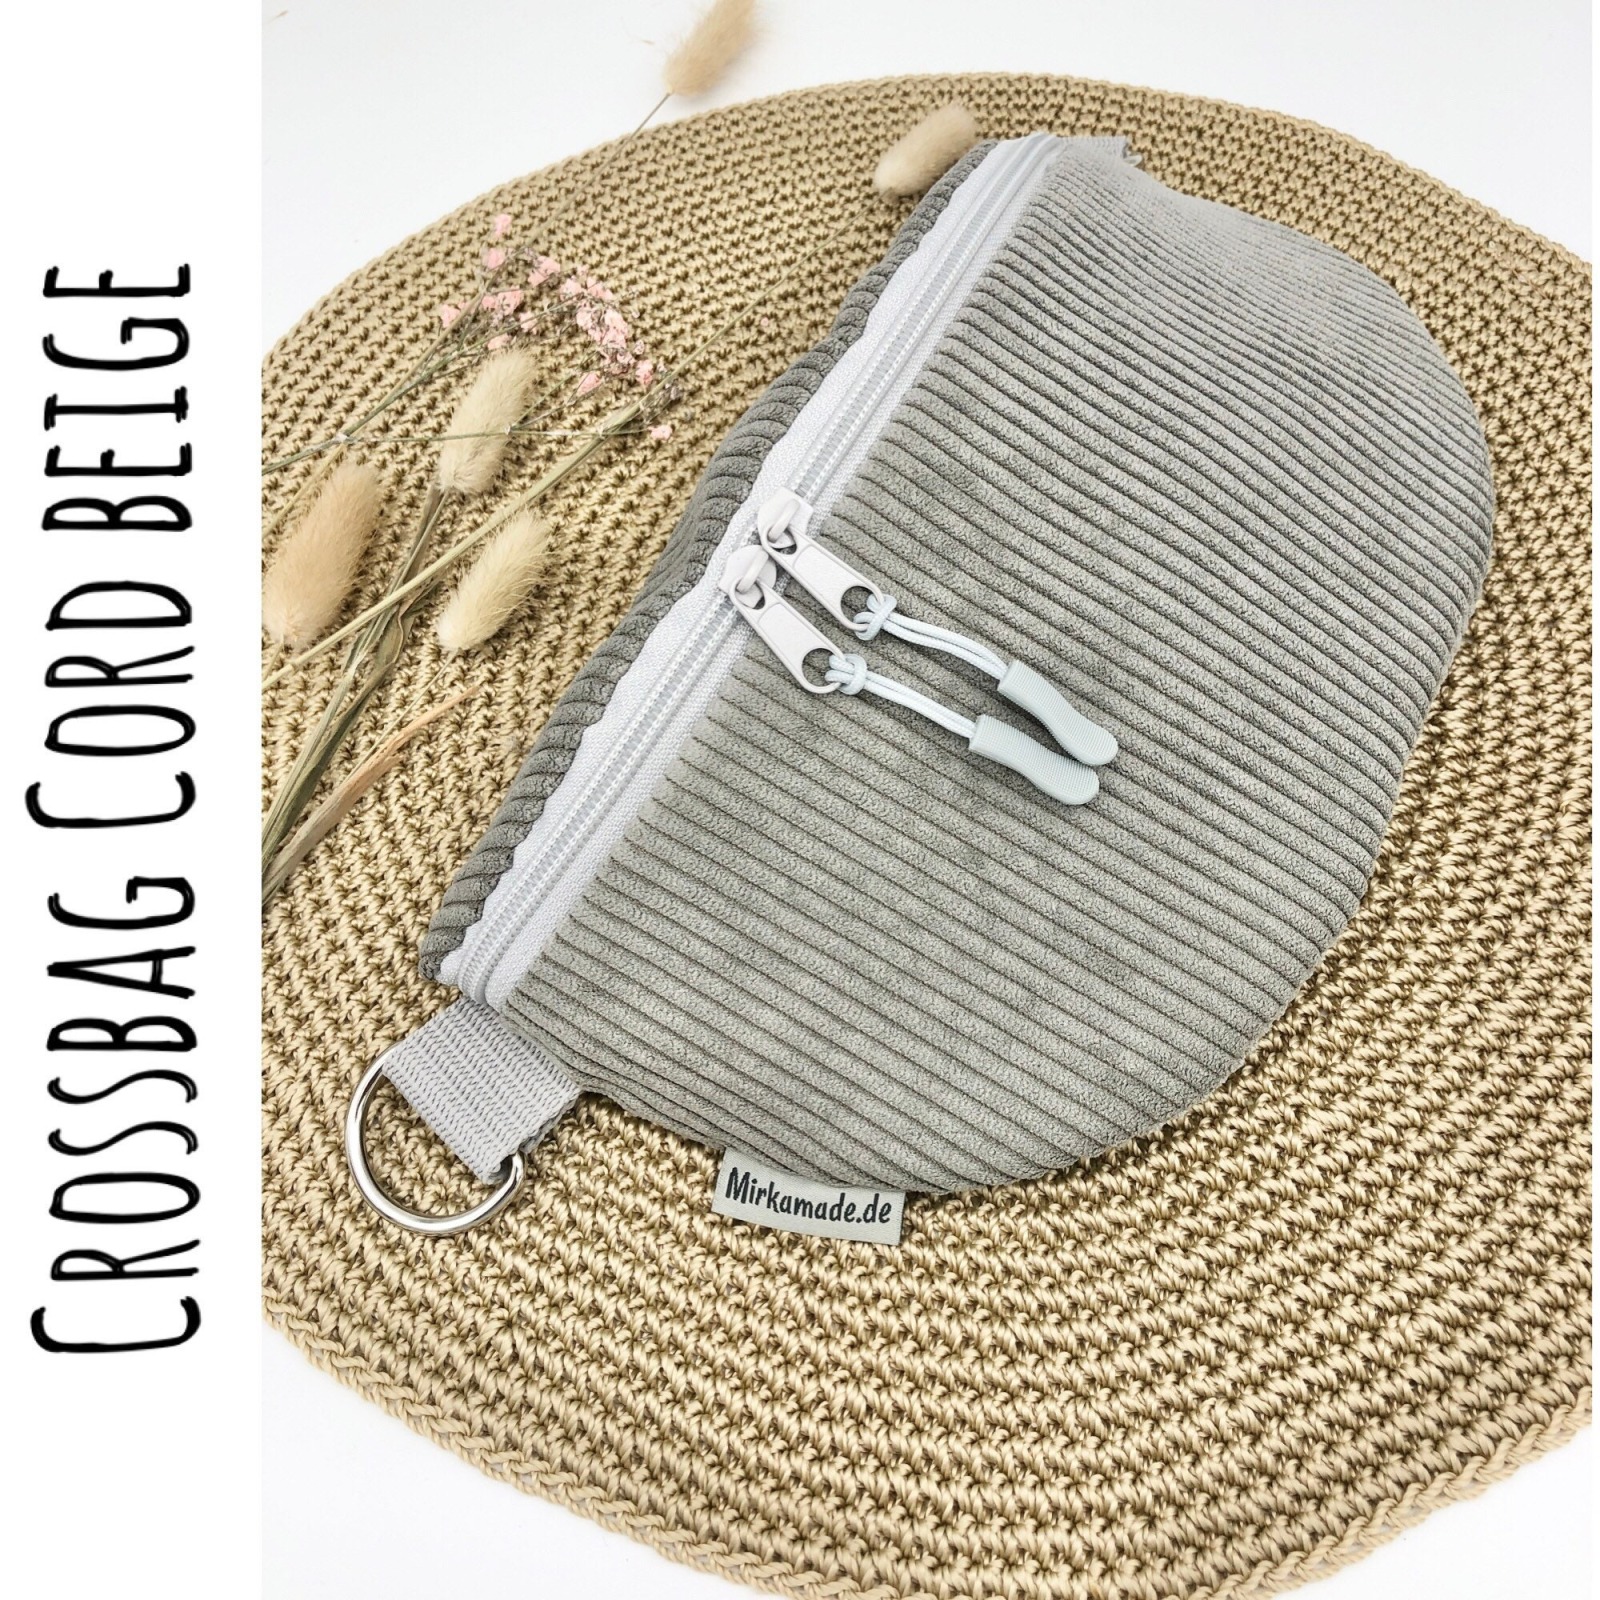 Bauchtasche, Crossbag Cord graubeige mit Taschengurt Sommer, Tasche Cord grau beige, Hipbag, leicht